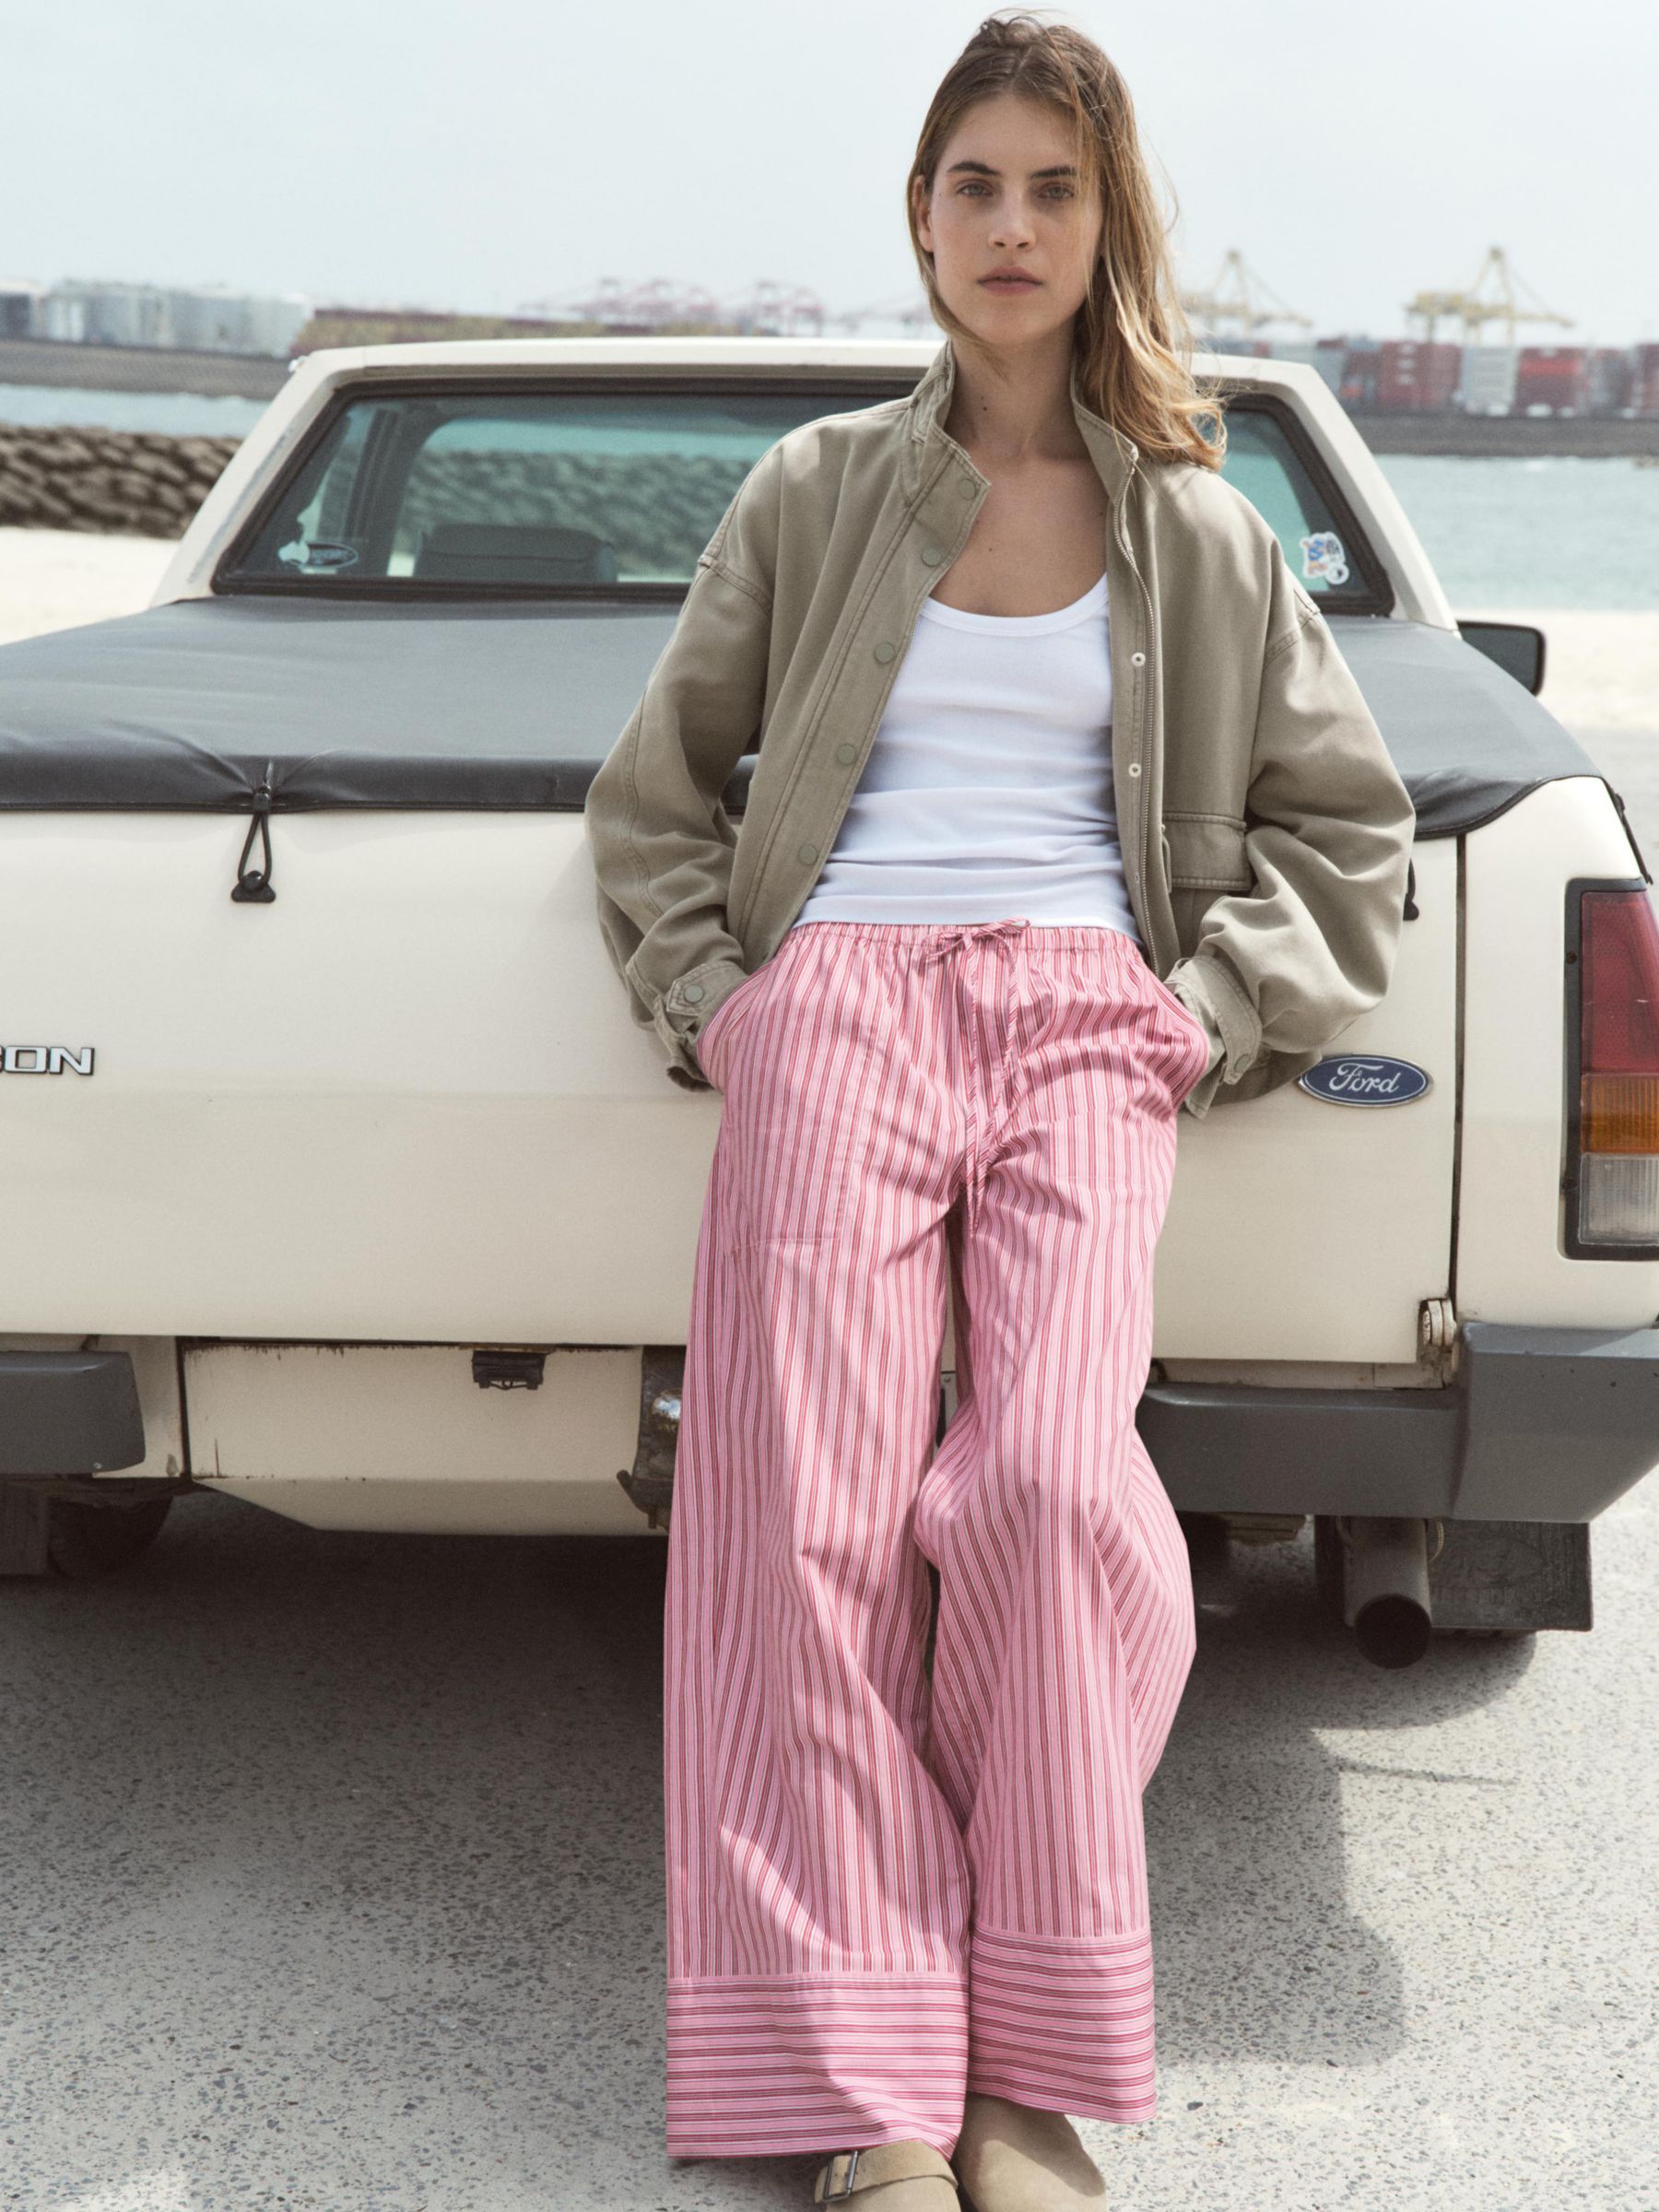 HUSH Santorini Striped Trousers, Pink, 10